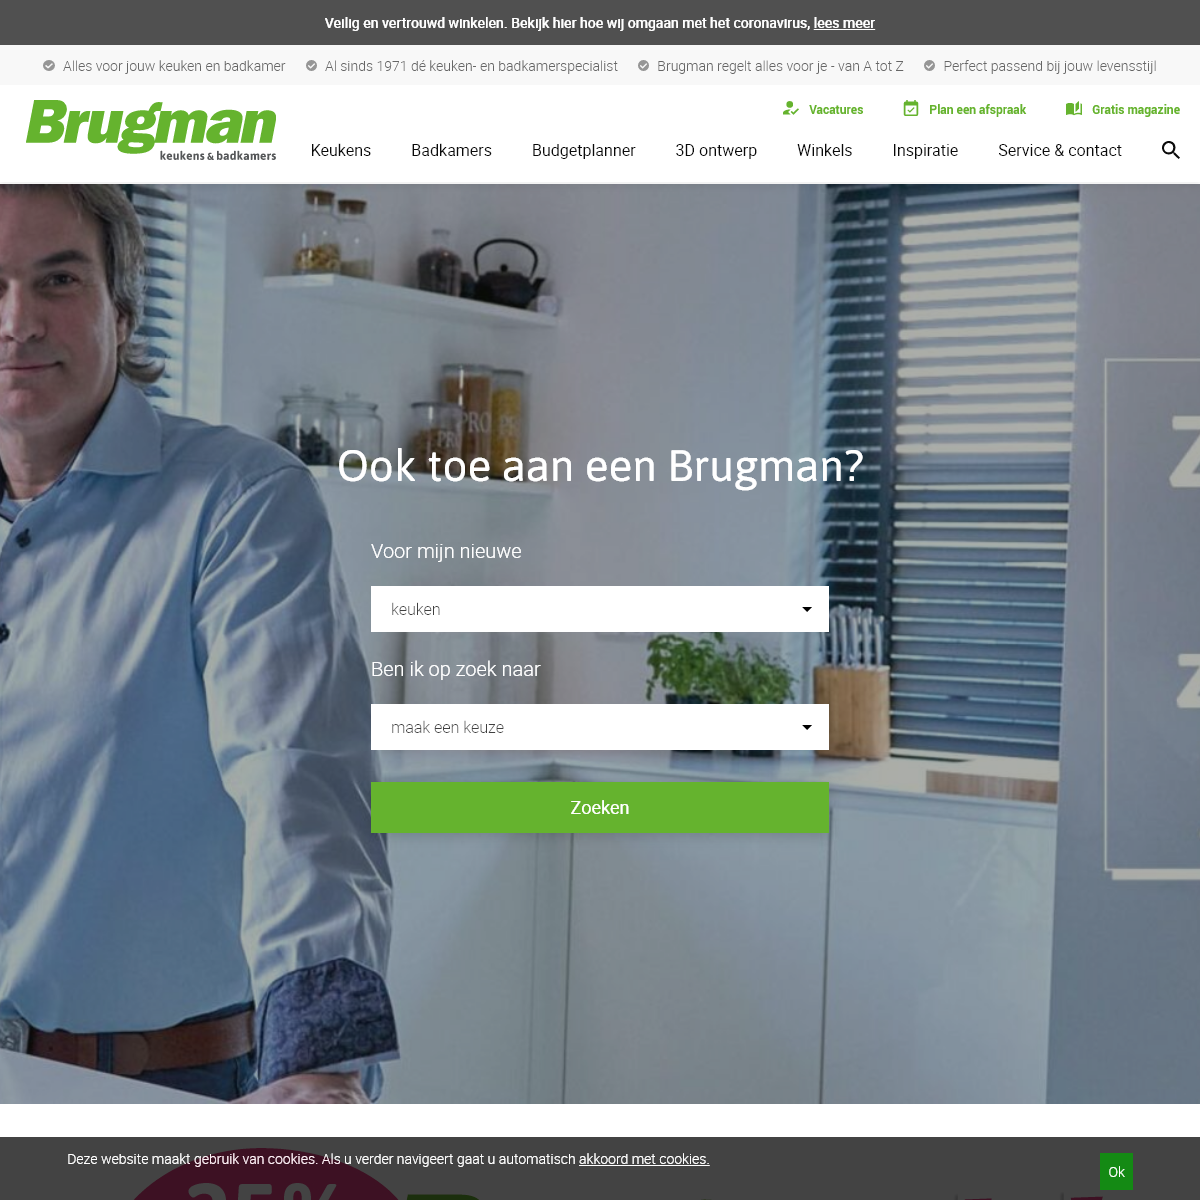 A complete backup of brugman.nl